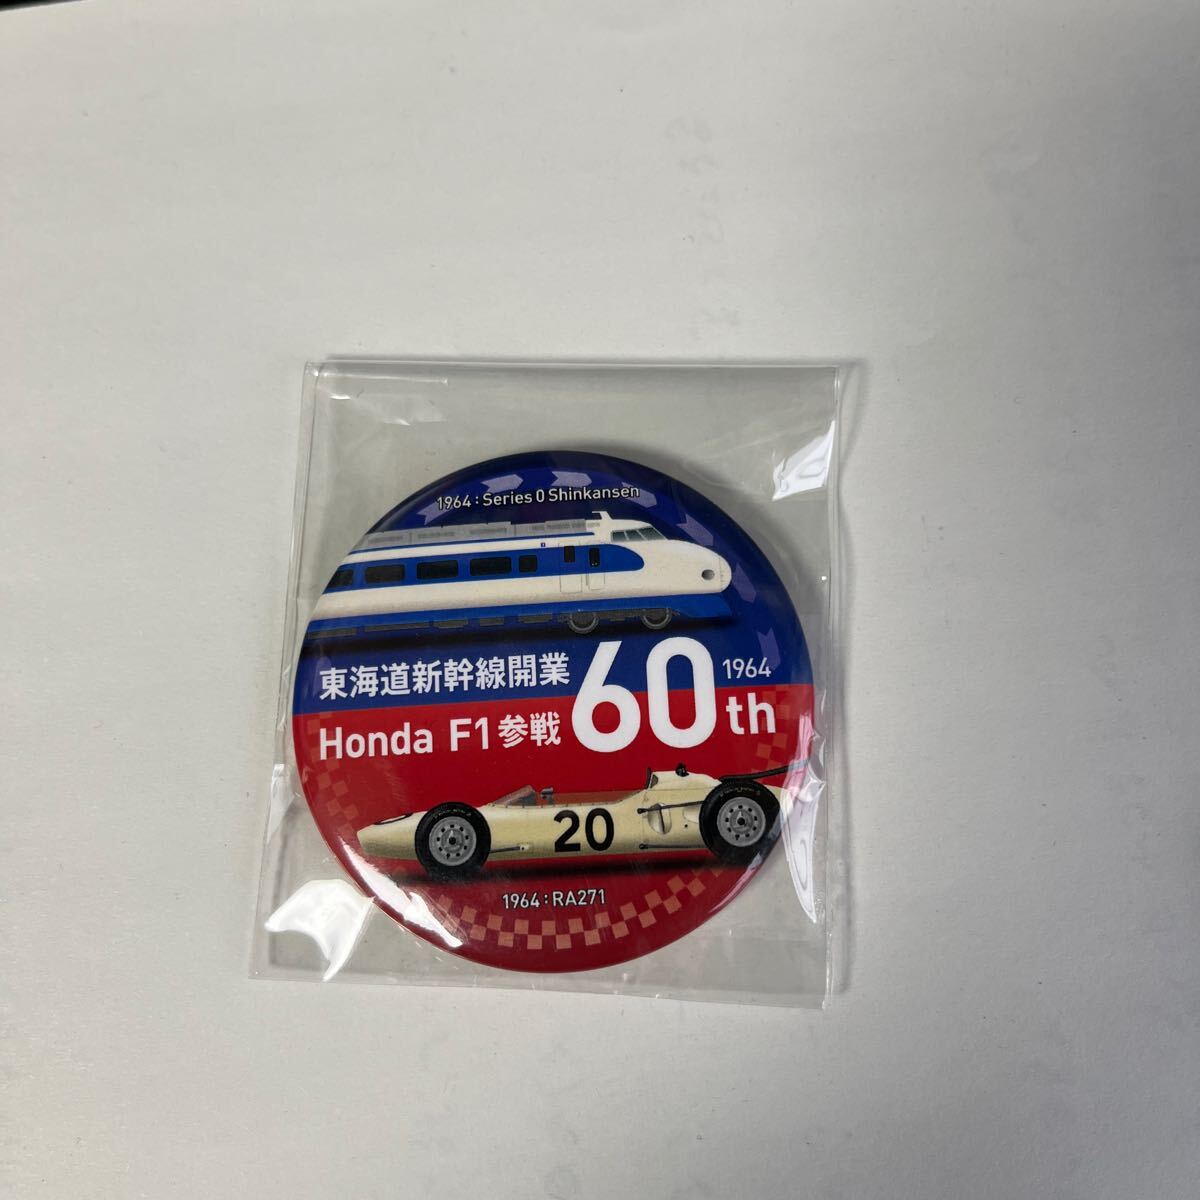 東海道新幹線 HONDA F1参戦 60周年記念特製缶バッチ_画像2